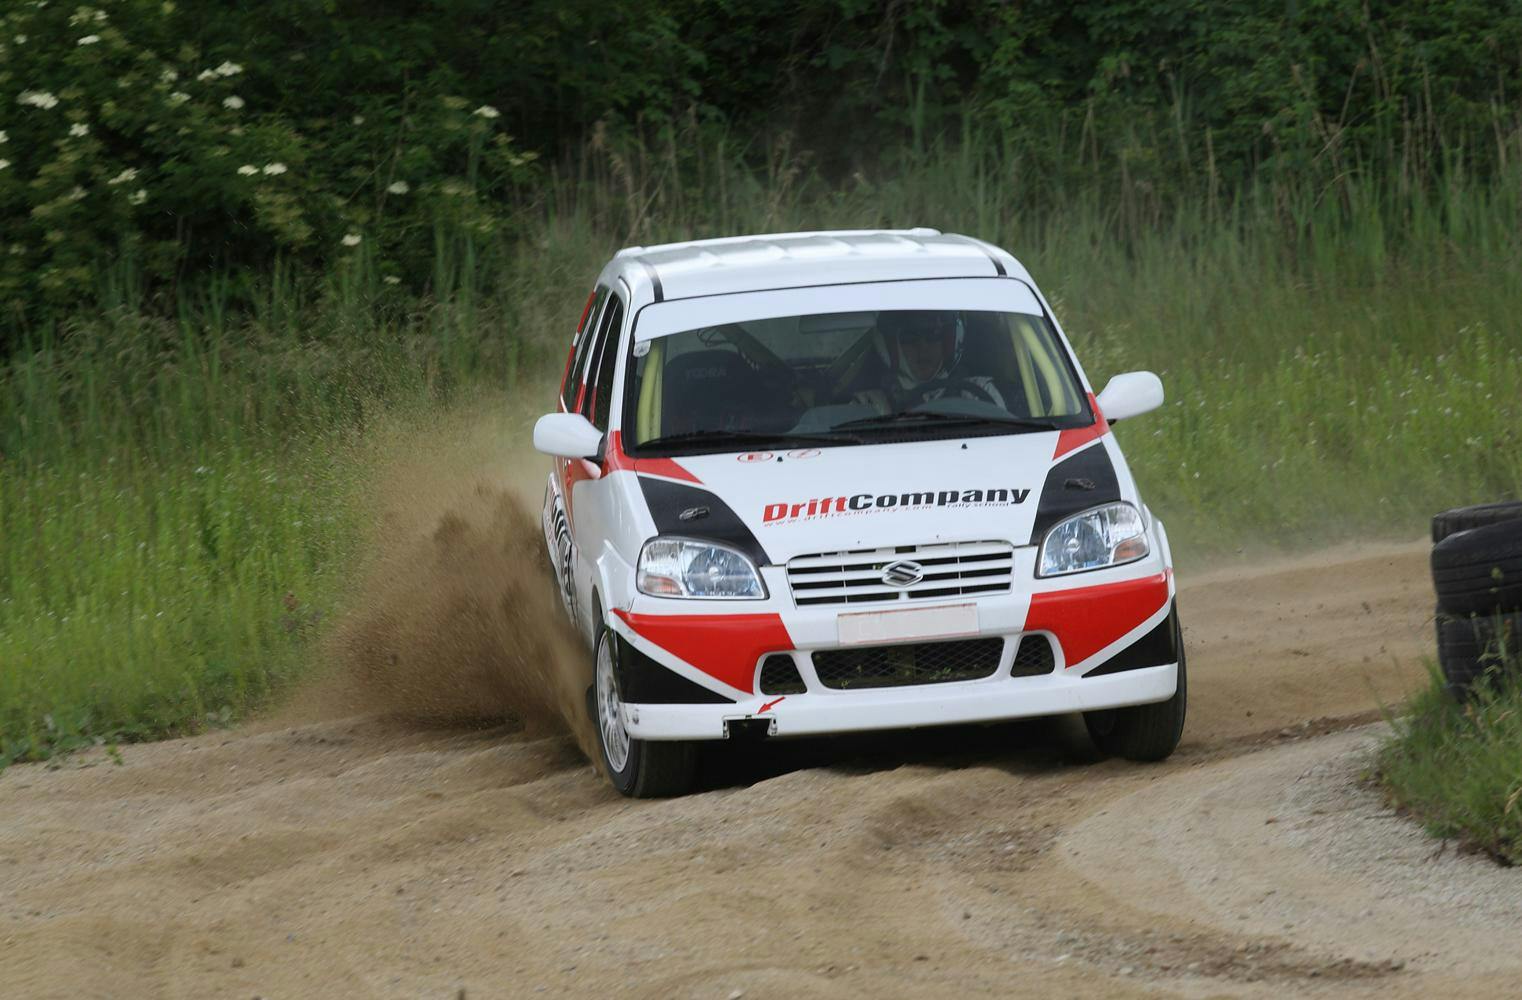 Rallye Schnuppertag mit Beppo Harrach | Profi Auto Drift